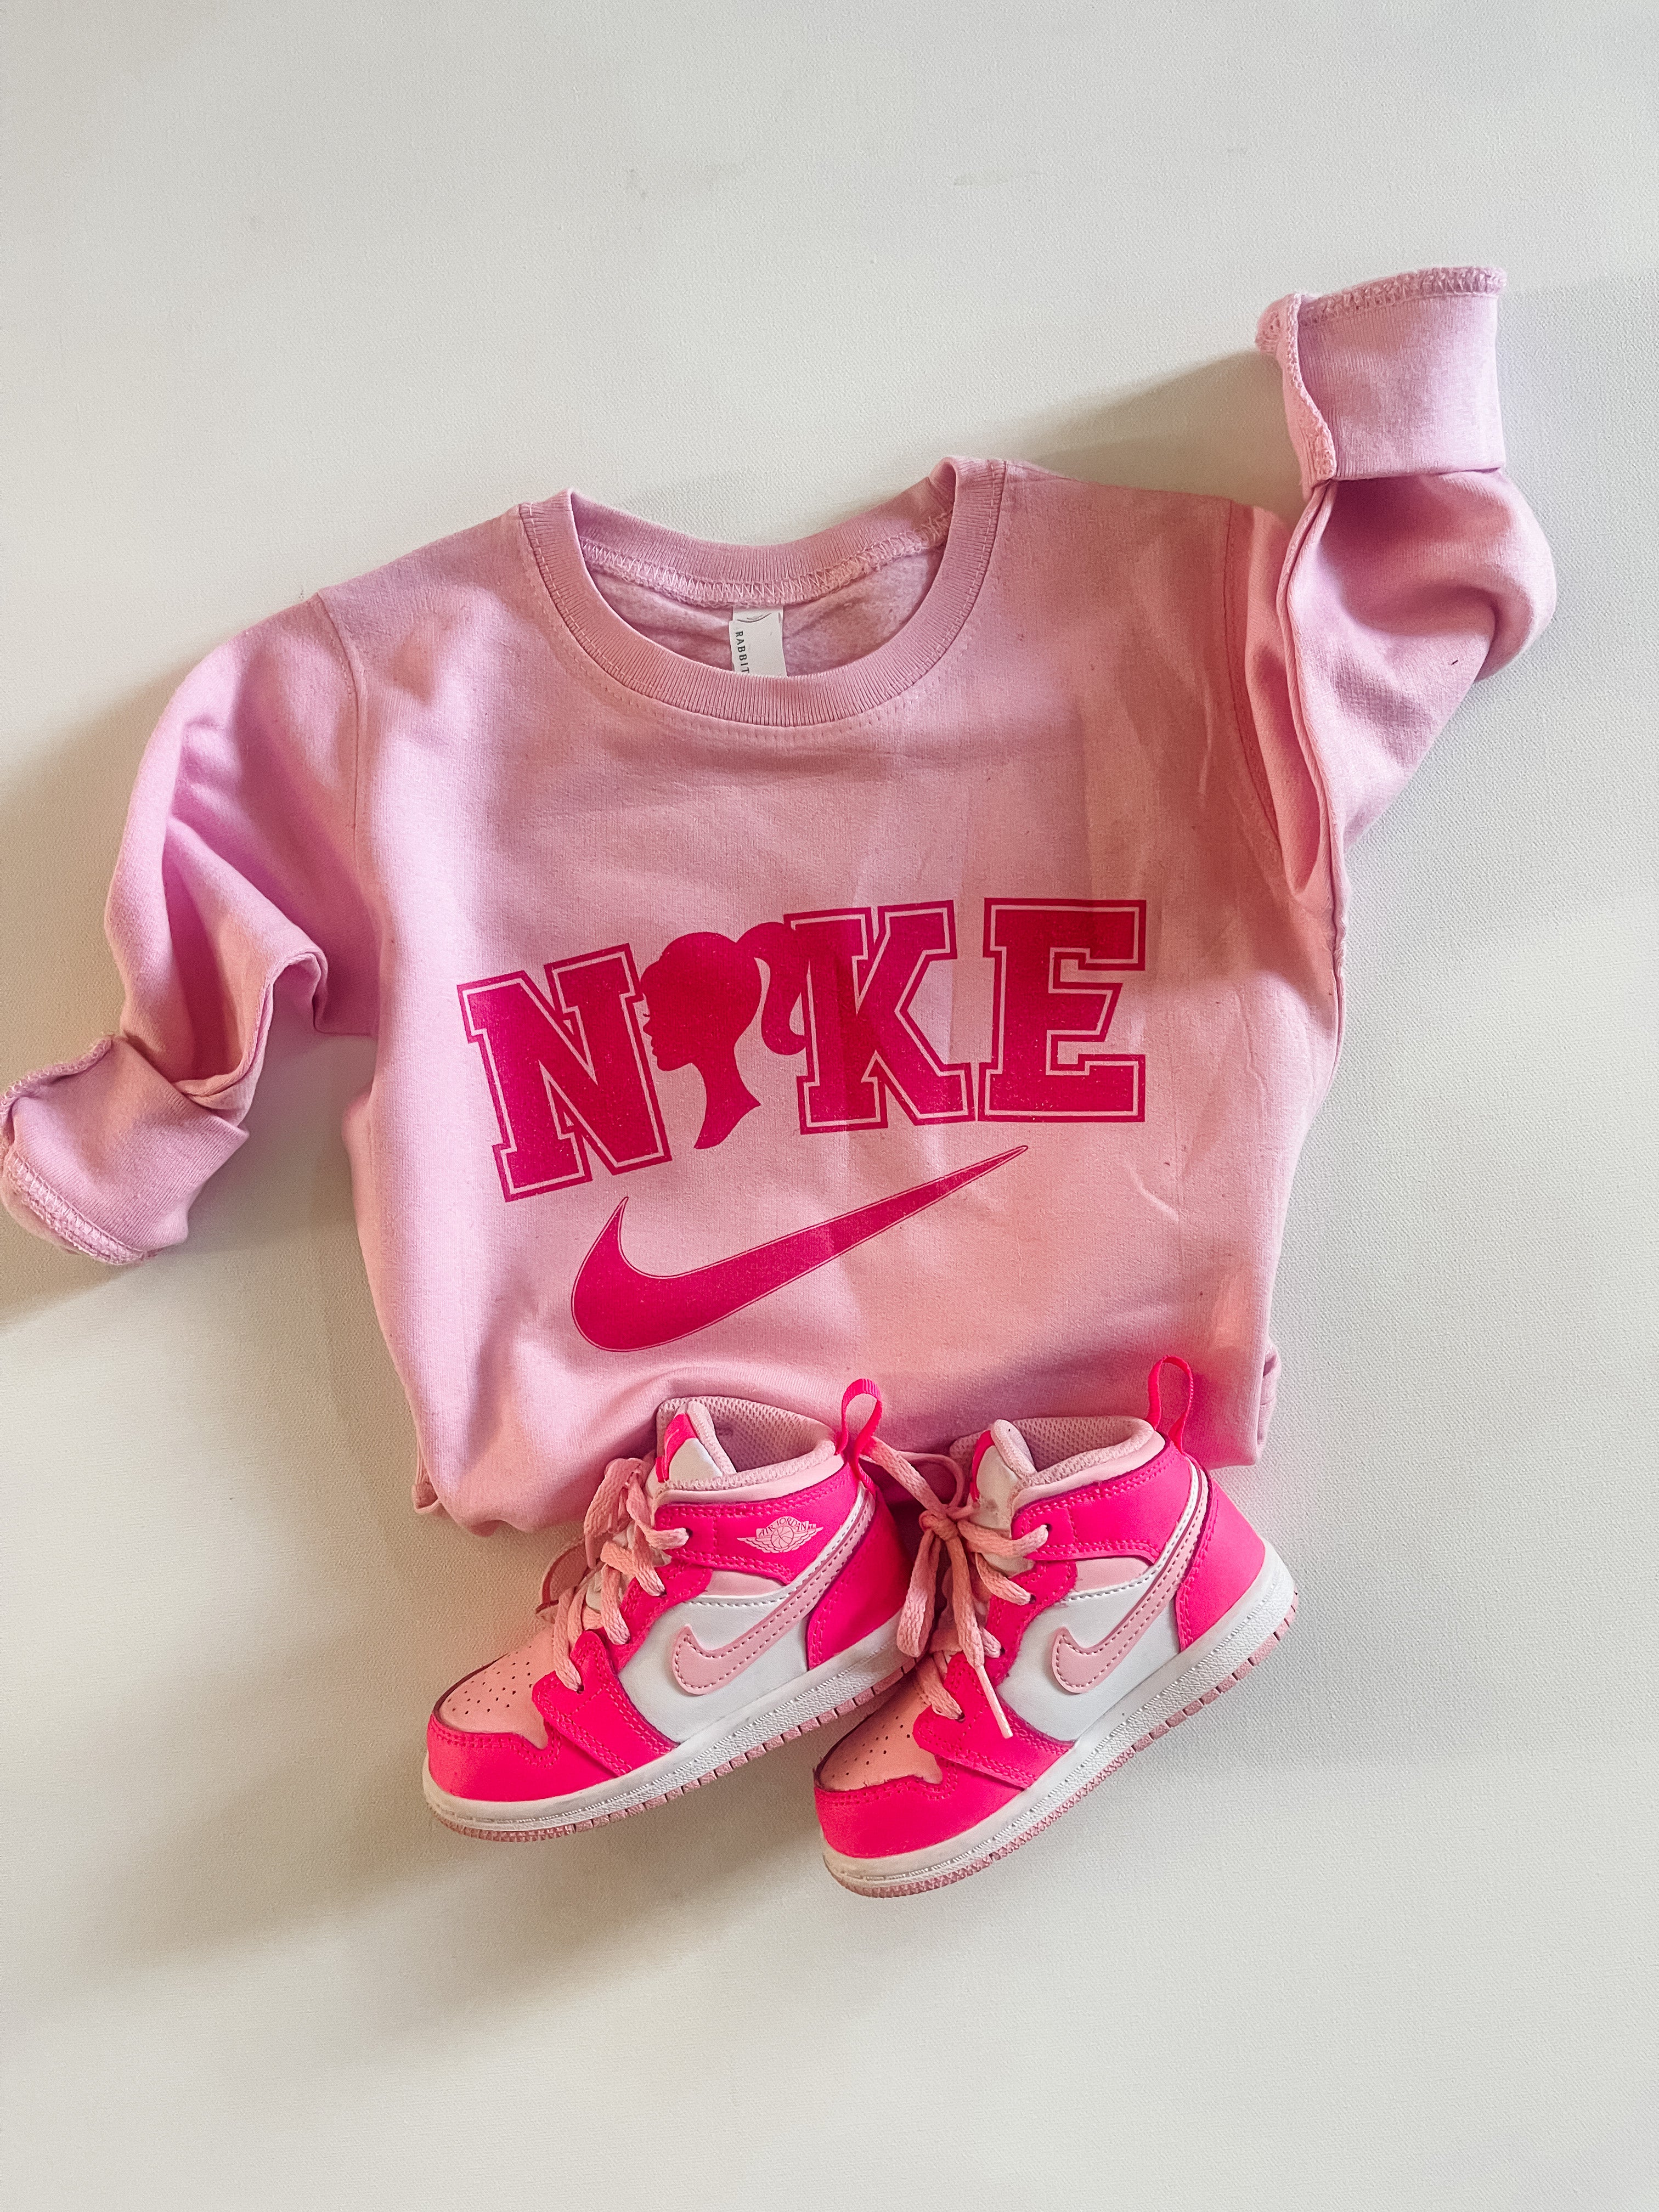 Official Barbie Nike Shirt, hoodie, longsleeve, sweater